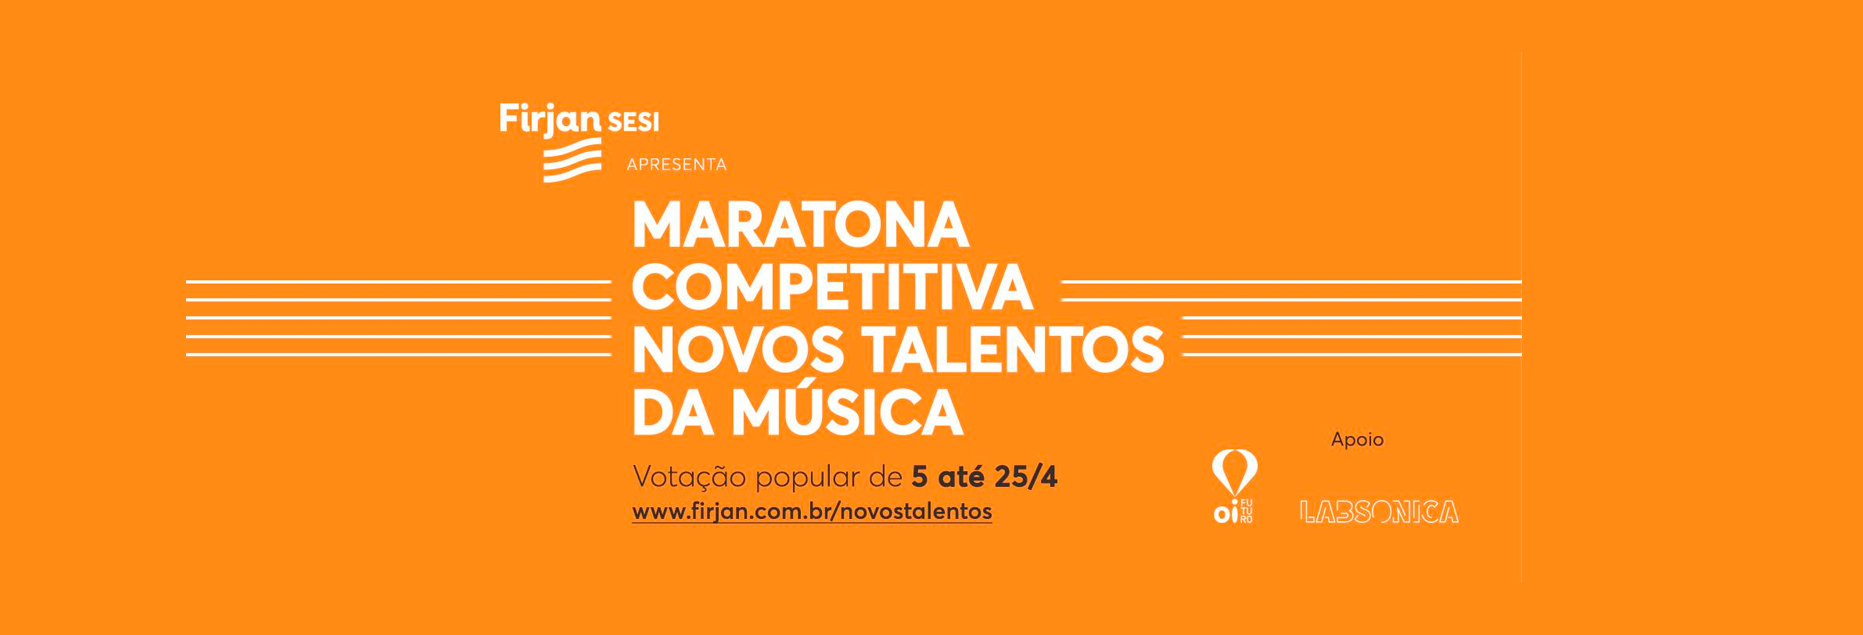 Firjan SESI promove Maratona Competitiva Novos Talentos da Música com entrada gratuita